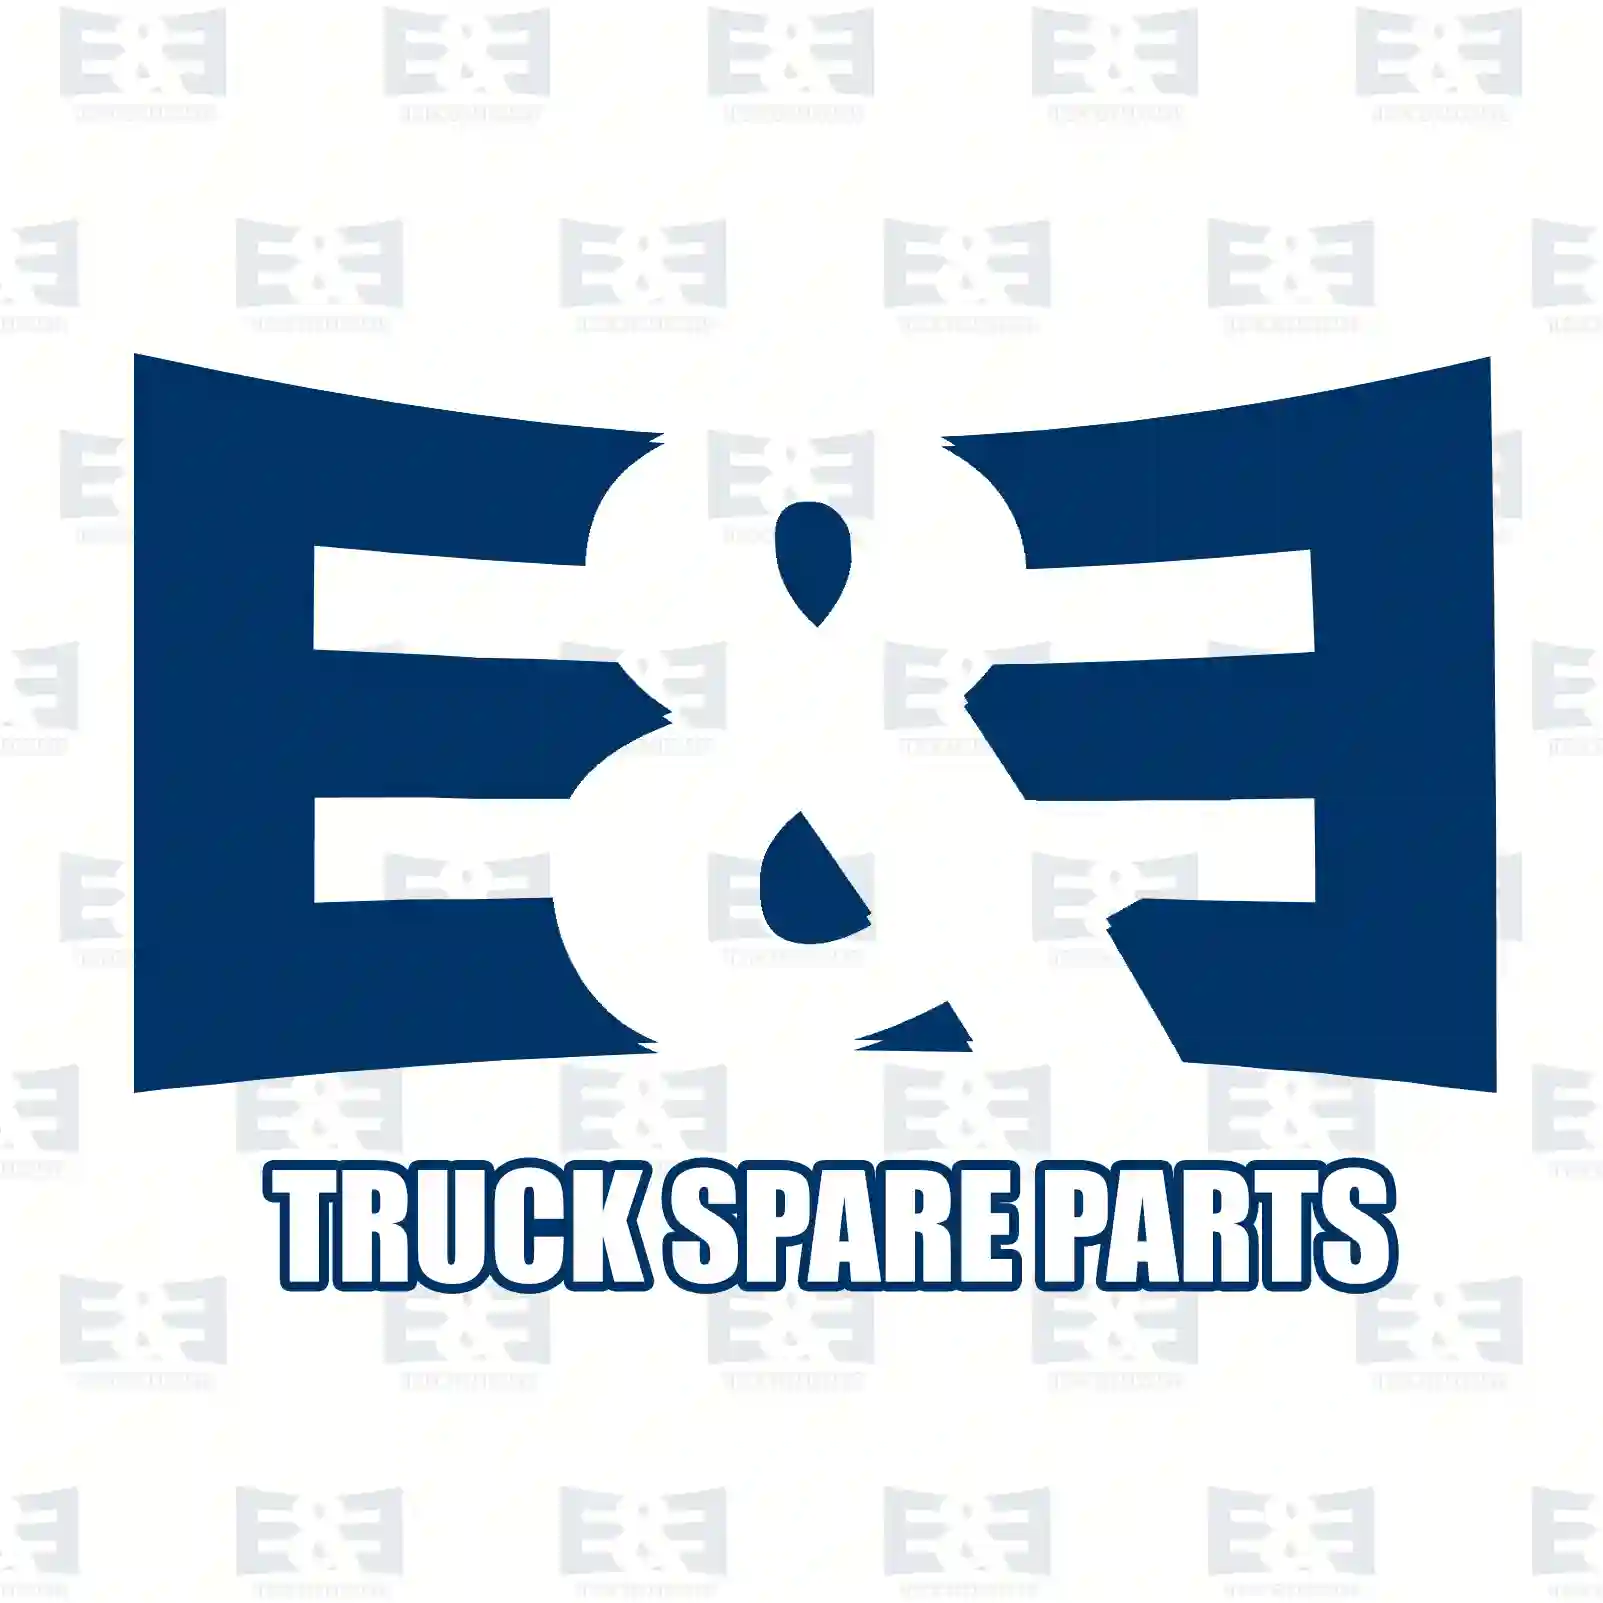 Blocking flap, exhaust gas recirculation, 2E2200937, 51081506146, 51081506153, 51081506170 ||  2E2200937 E&E Truck Spare Parts | Truck Spare Parts, Auotomotive Spare Parts Blocking flap, exhaust gas recirculation, 2E2200937, 51081506146, 51081506153, 51081506170 ||  2E2200937 E&E Truck Spare Parts | Truck Spare Parts, Auotomotive Spare Parts